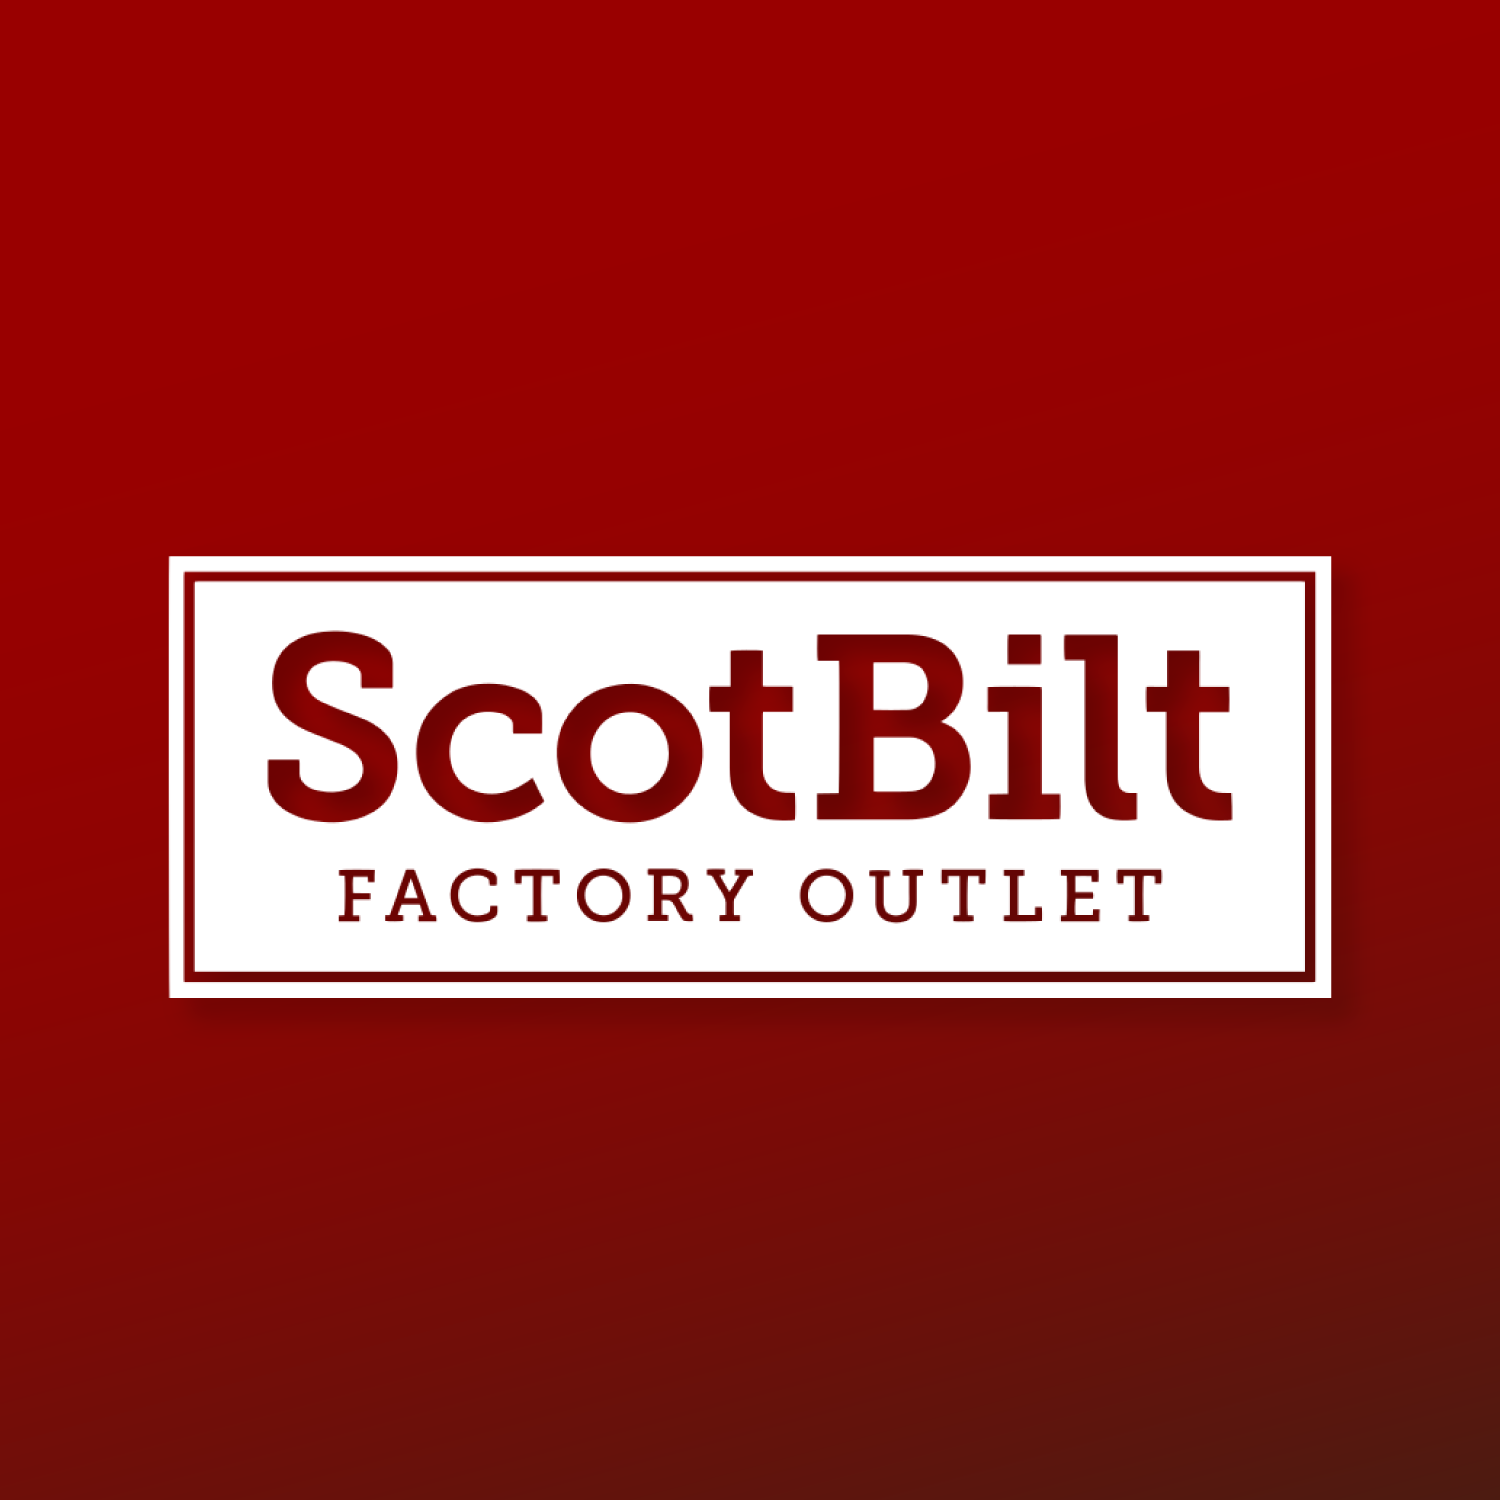 ScotBilt Factory Outlet